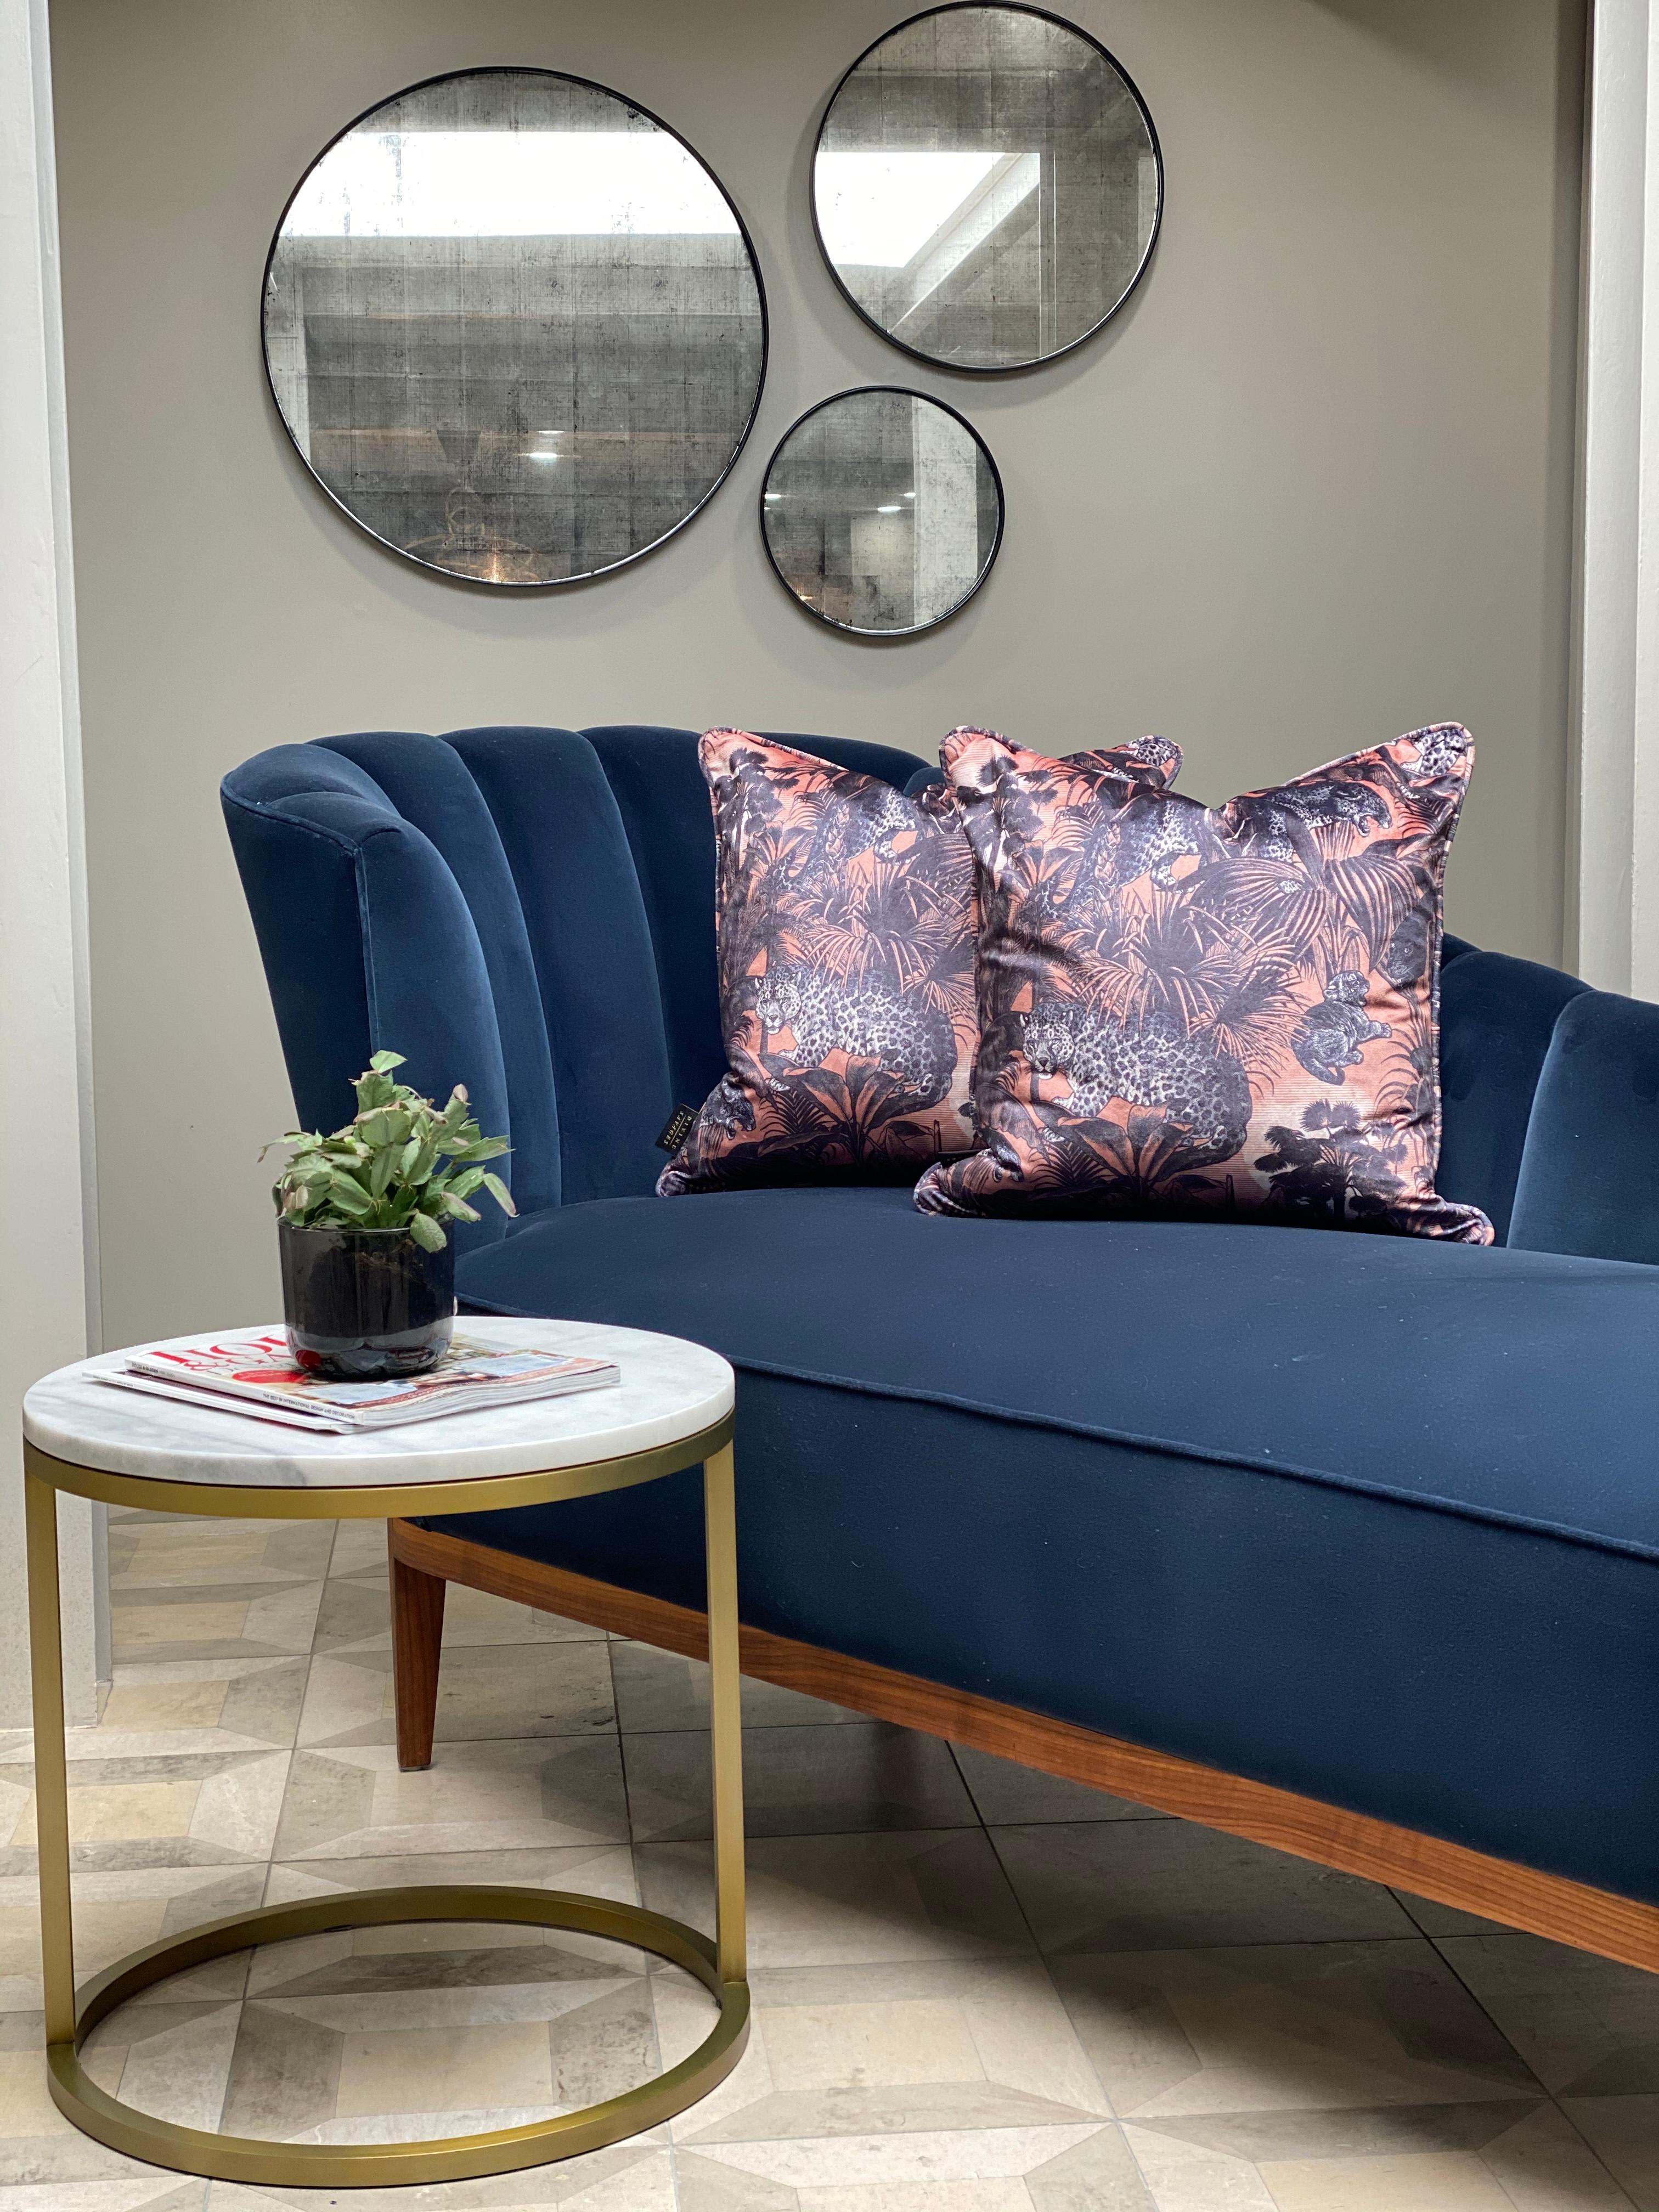 Das Design von kleinen Luxusmöbeln, die für kleinere Wohnungen geeignet sind, ist entscheidend für die Maximierung von Funktionalität und Ästhetik auf begrenztem Raum. Der runde Couchtisch Diana ist ein perfektes Beispiel für diese Philosophie.